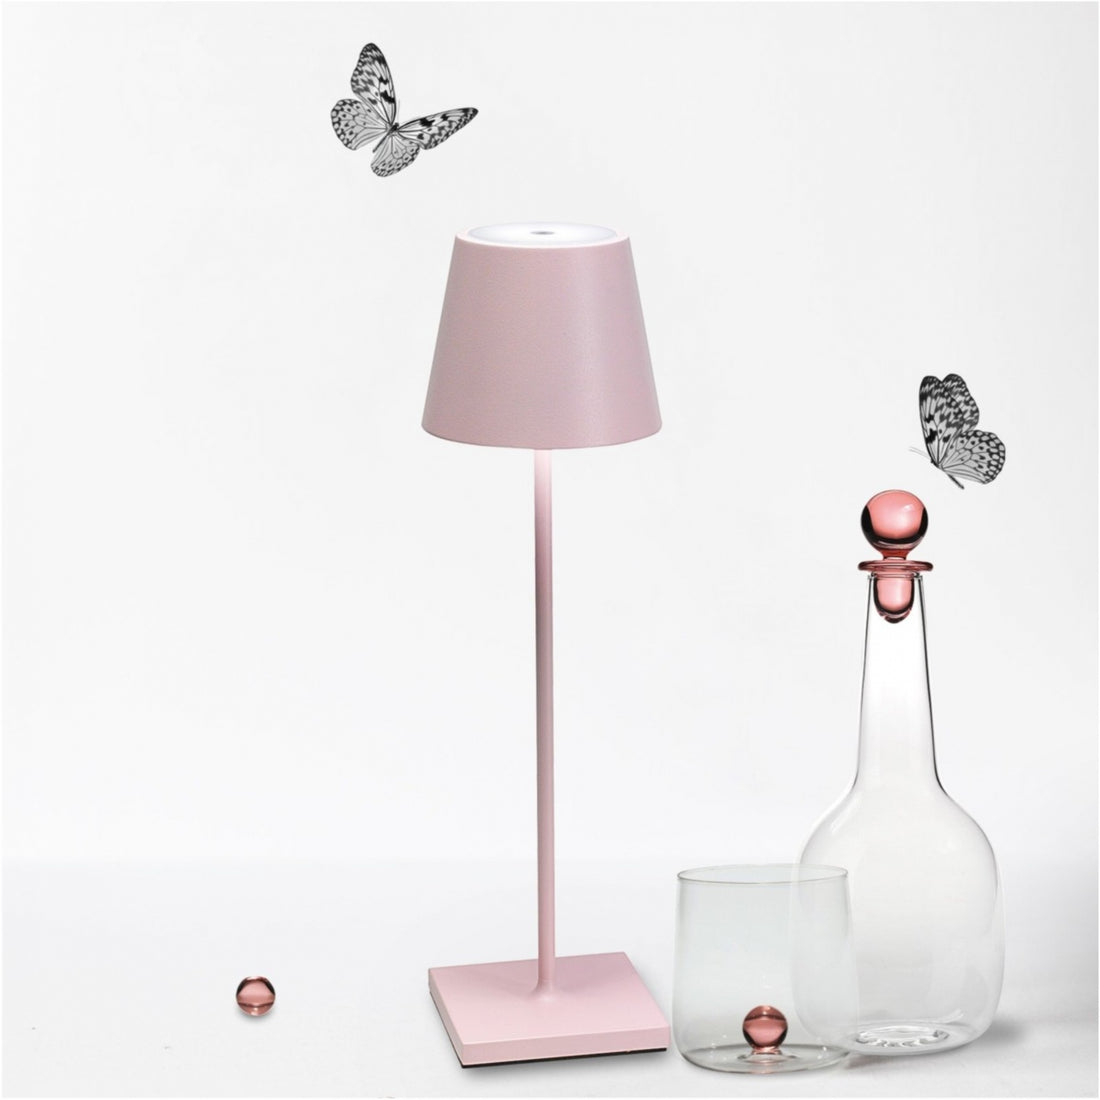 ZAFFERANO Poldina PRO Lampada da Tavolo 38cm LED Ricaricabile Senza Fili Rosa Alluminio